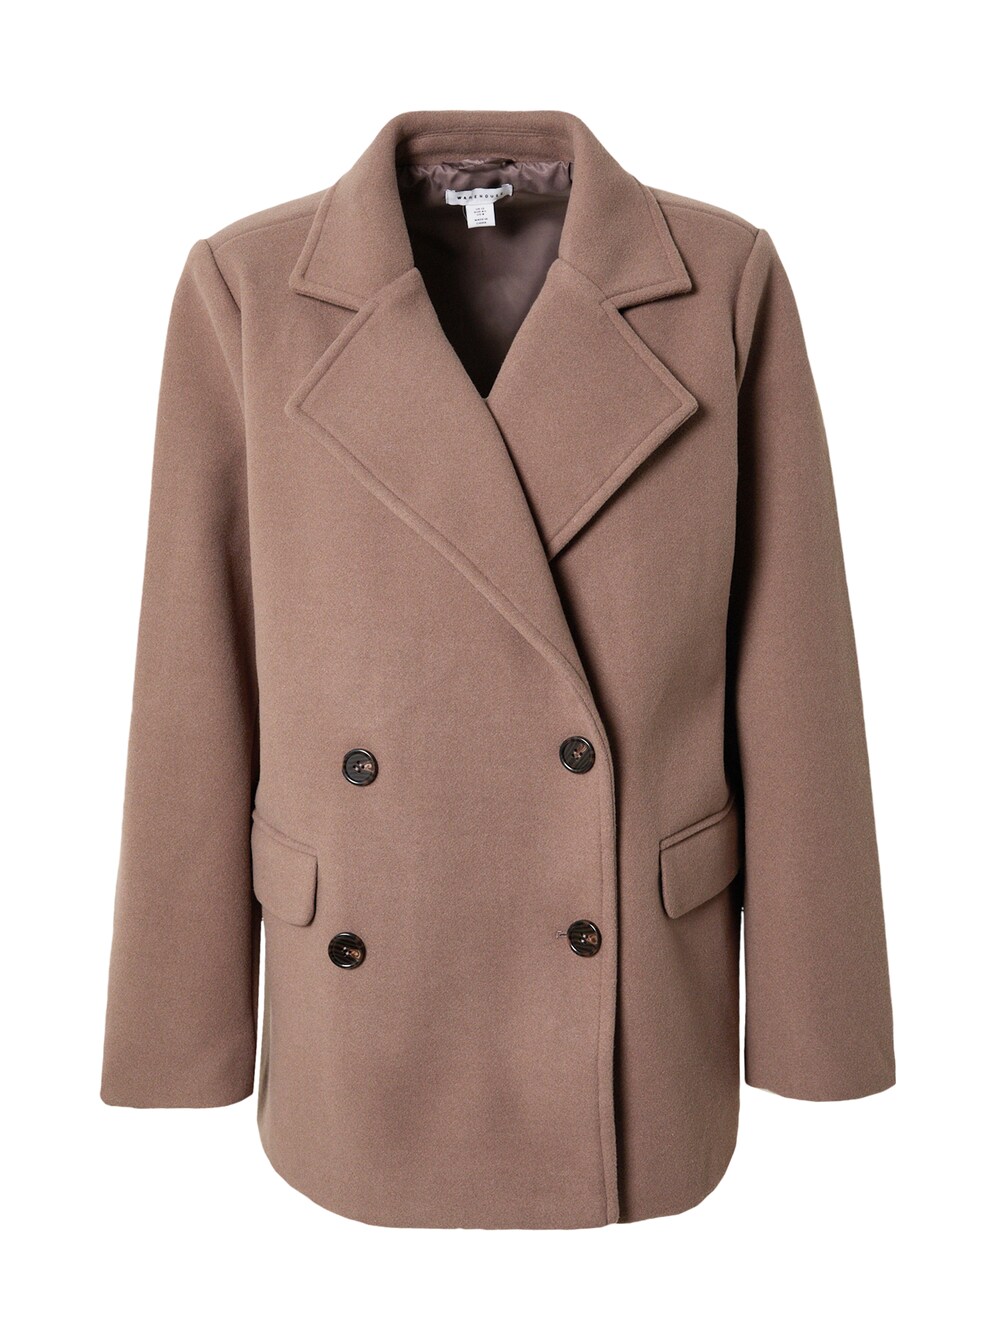 Межсезонное пальто Warehouse, коричневый